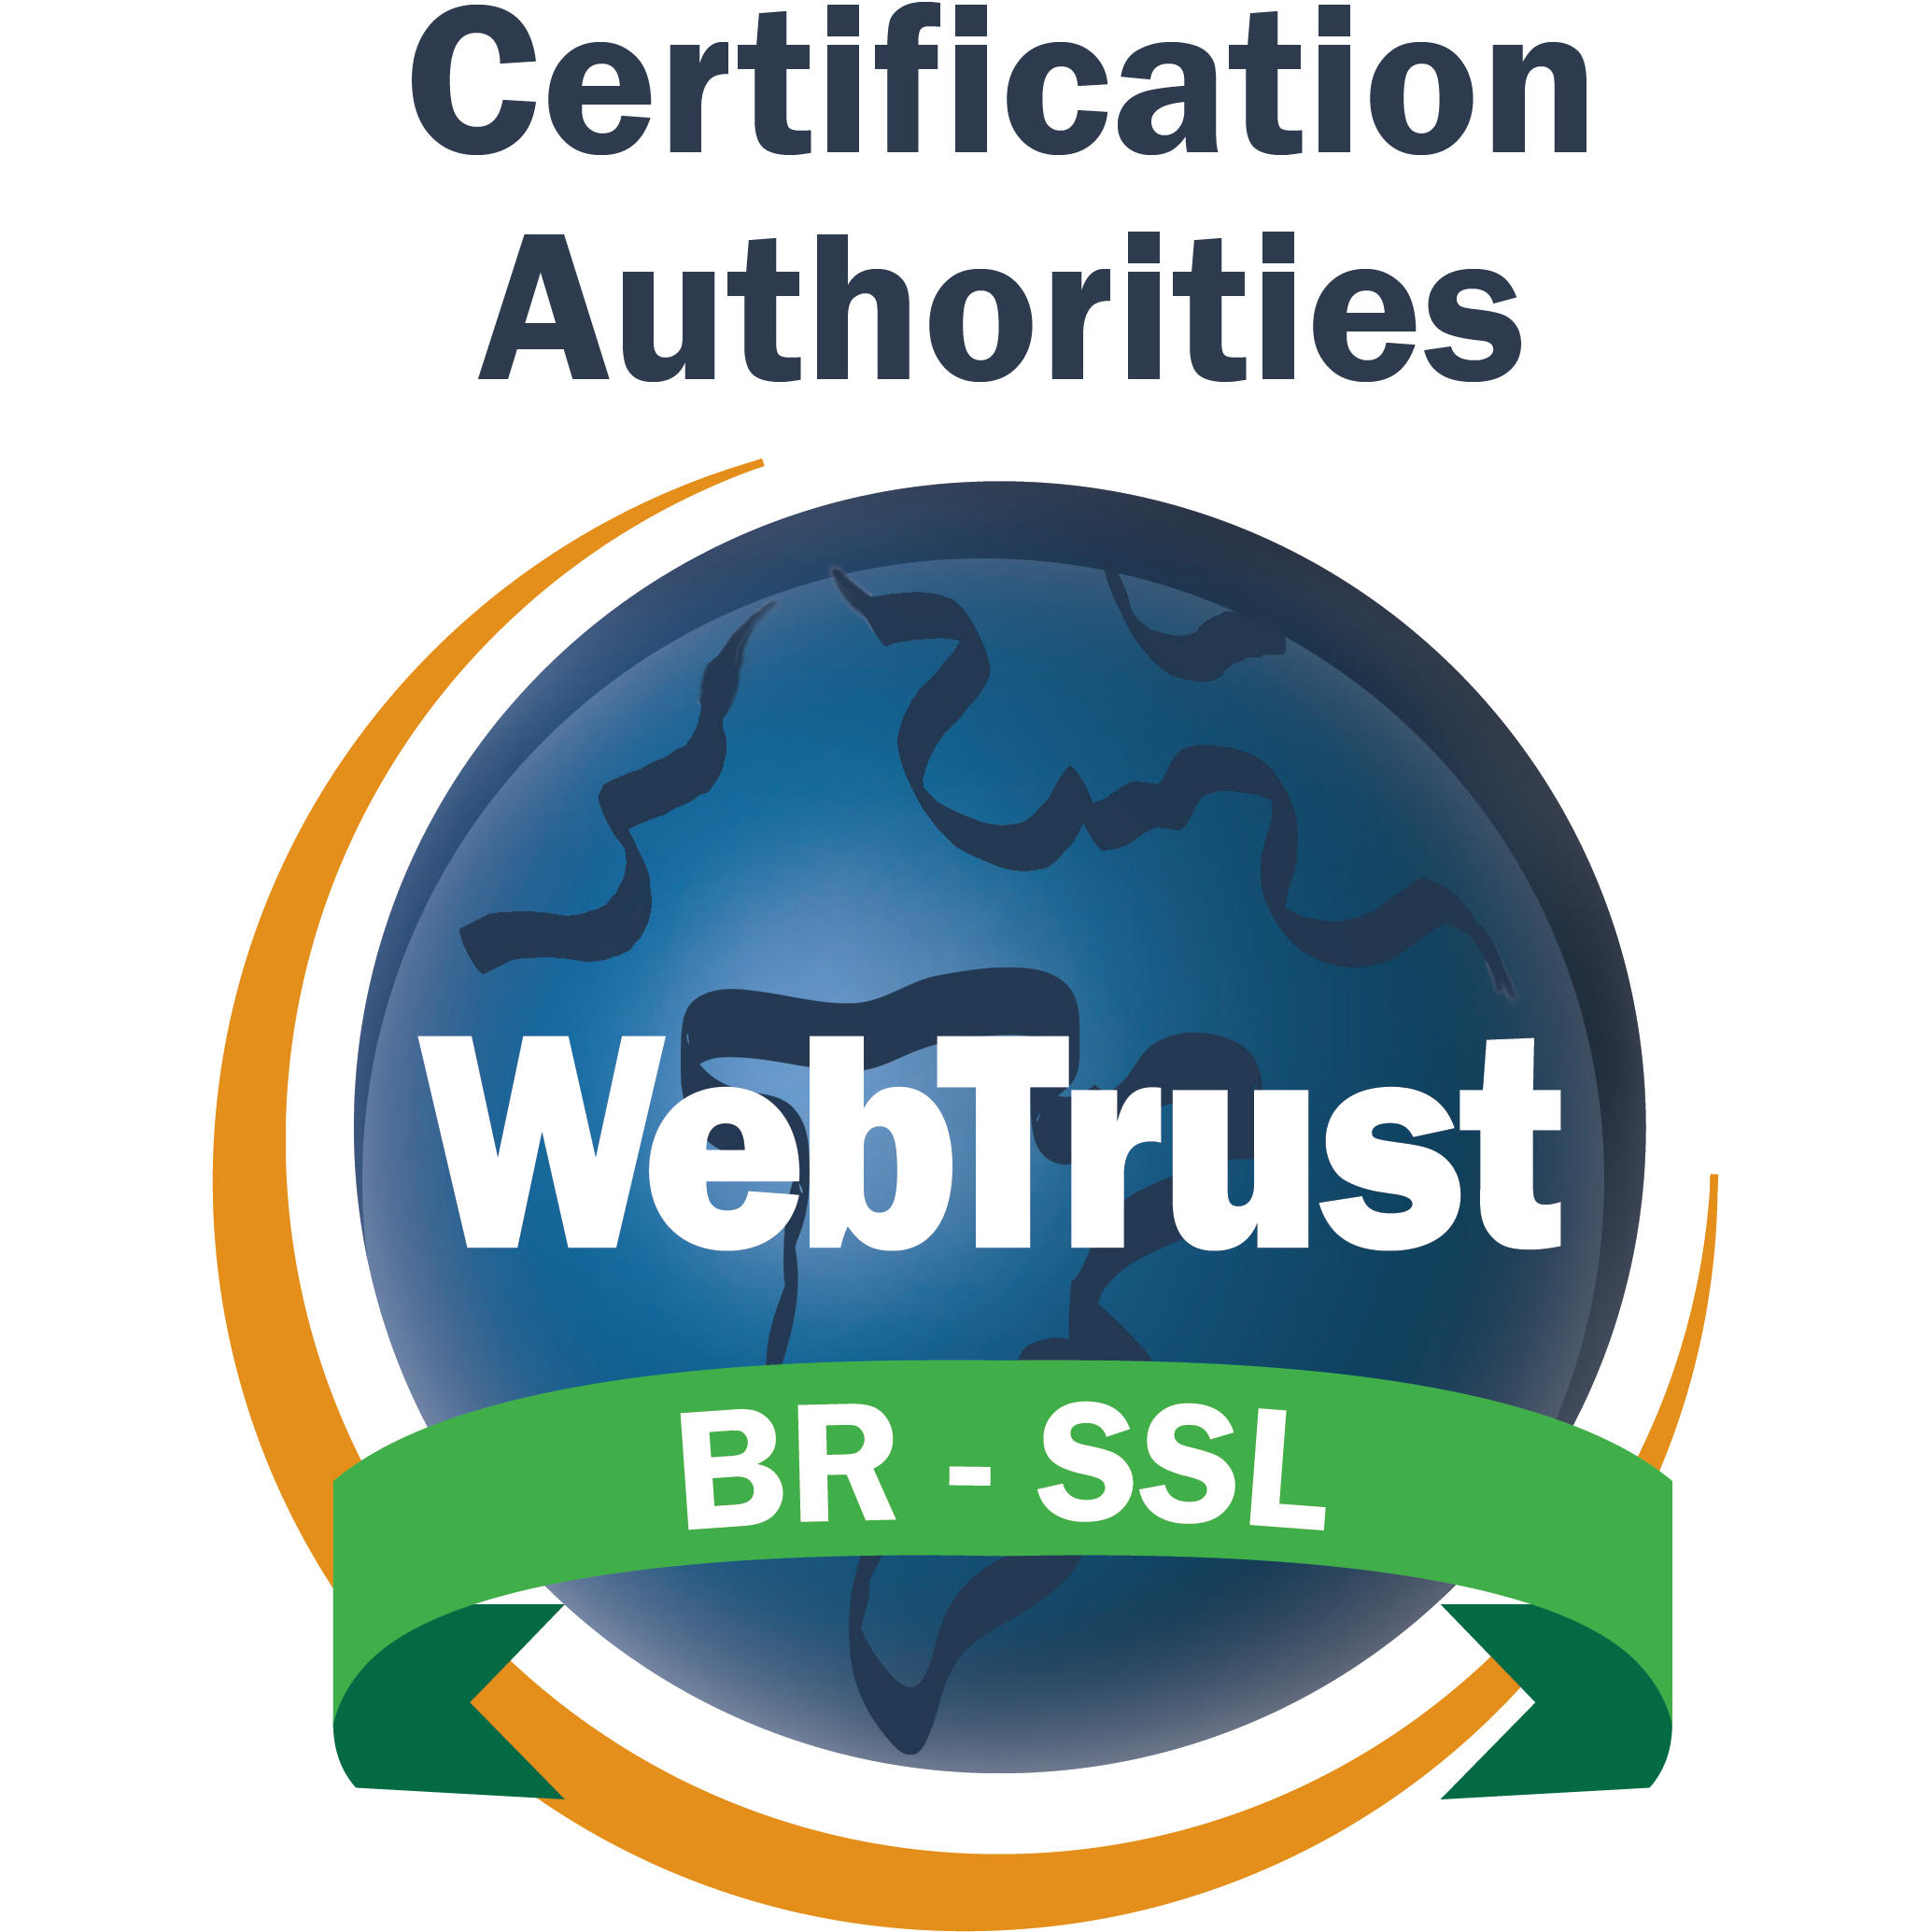 WebTrust seal BR-SSL